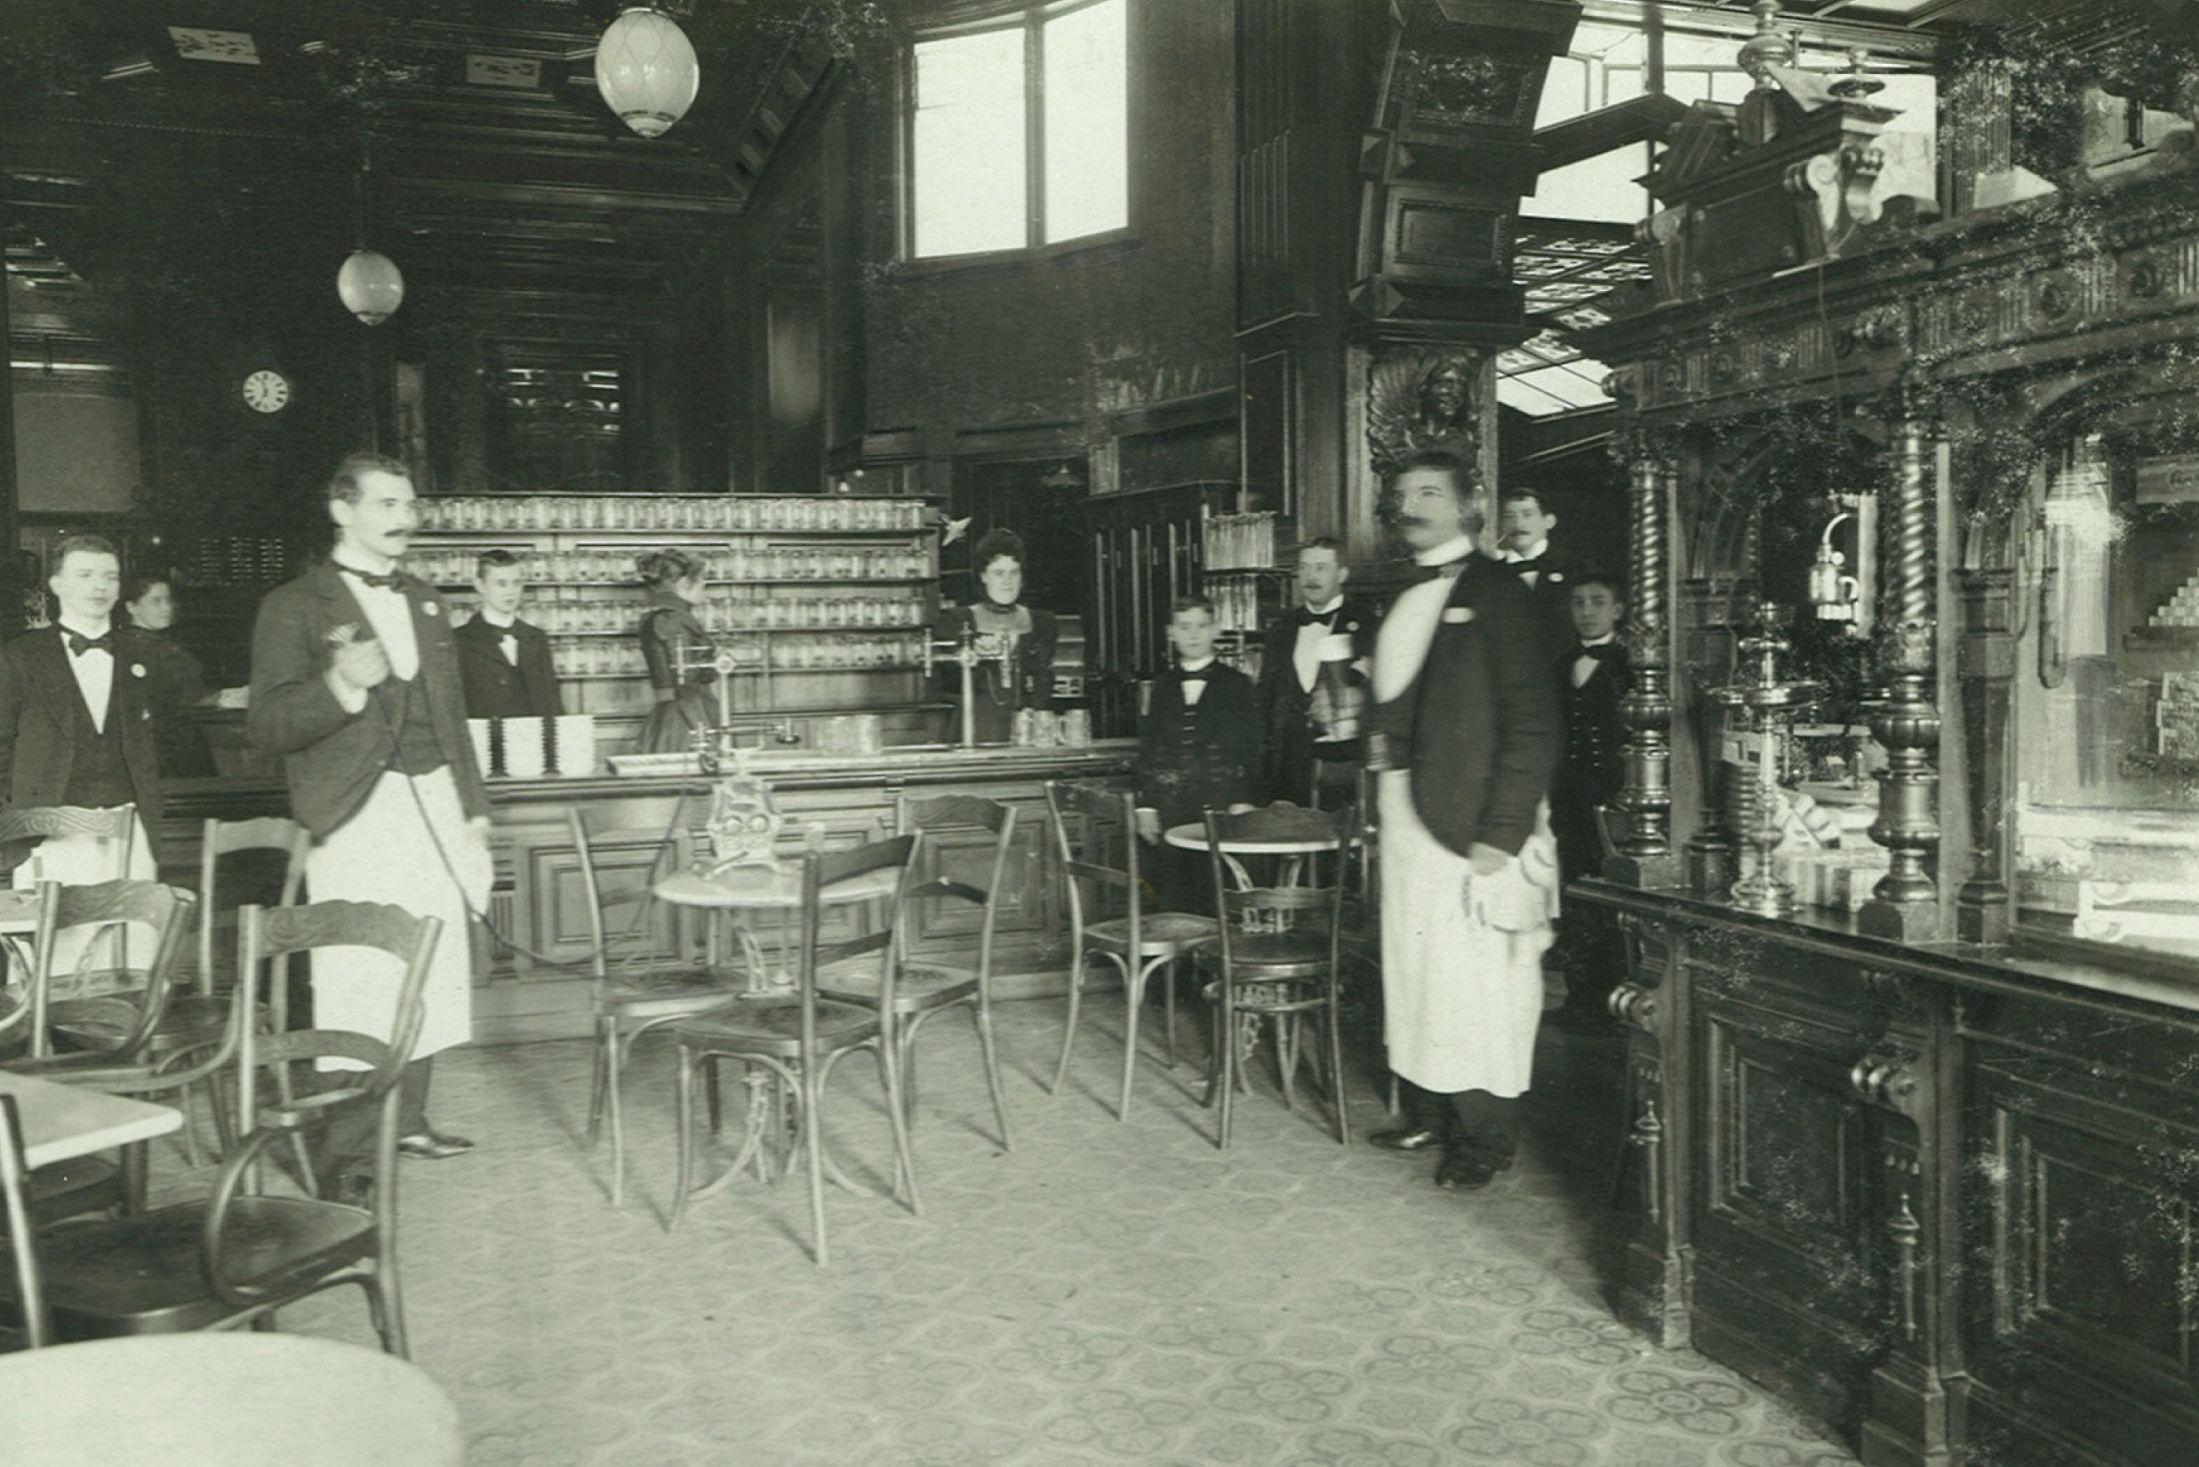 OPPVARTERE: Før i tiden ble det brukt ringeklokke når man ville ha tak i en kelner. Bildet er tatt ca. 1900. Foto: Ukjent fotograf/Grand